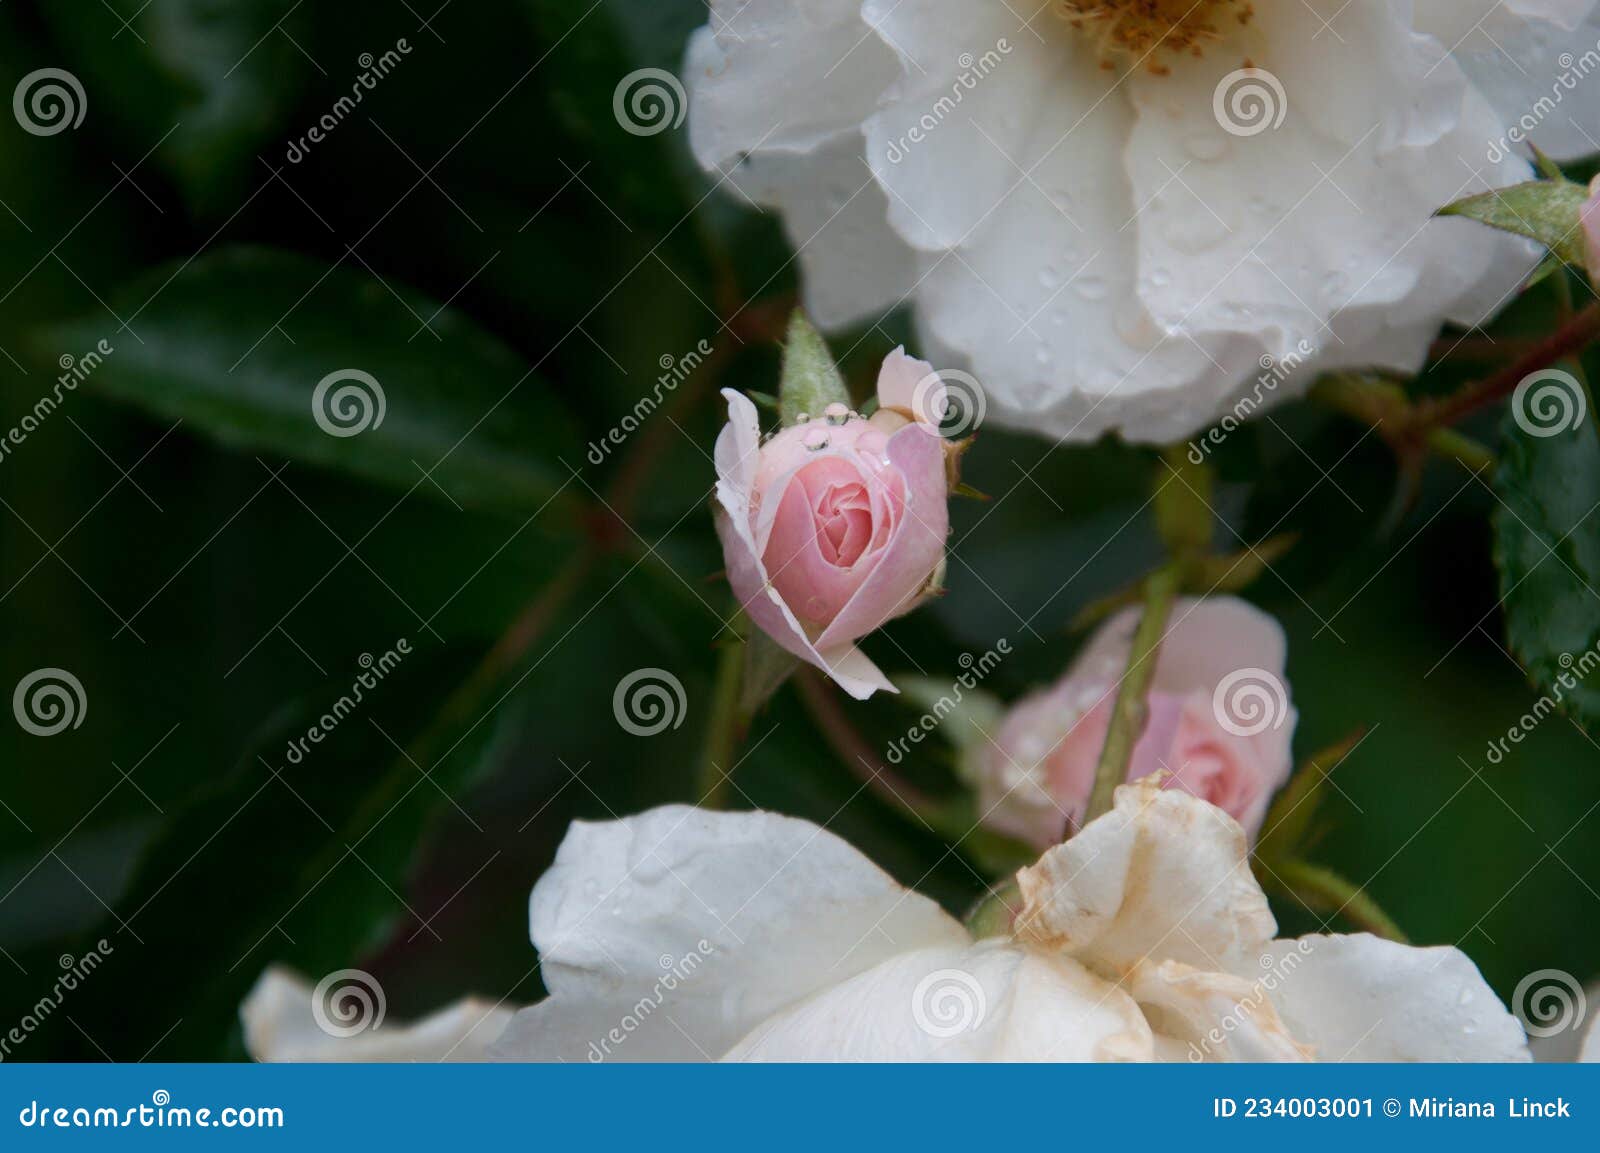 beautiful rose in spring